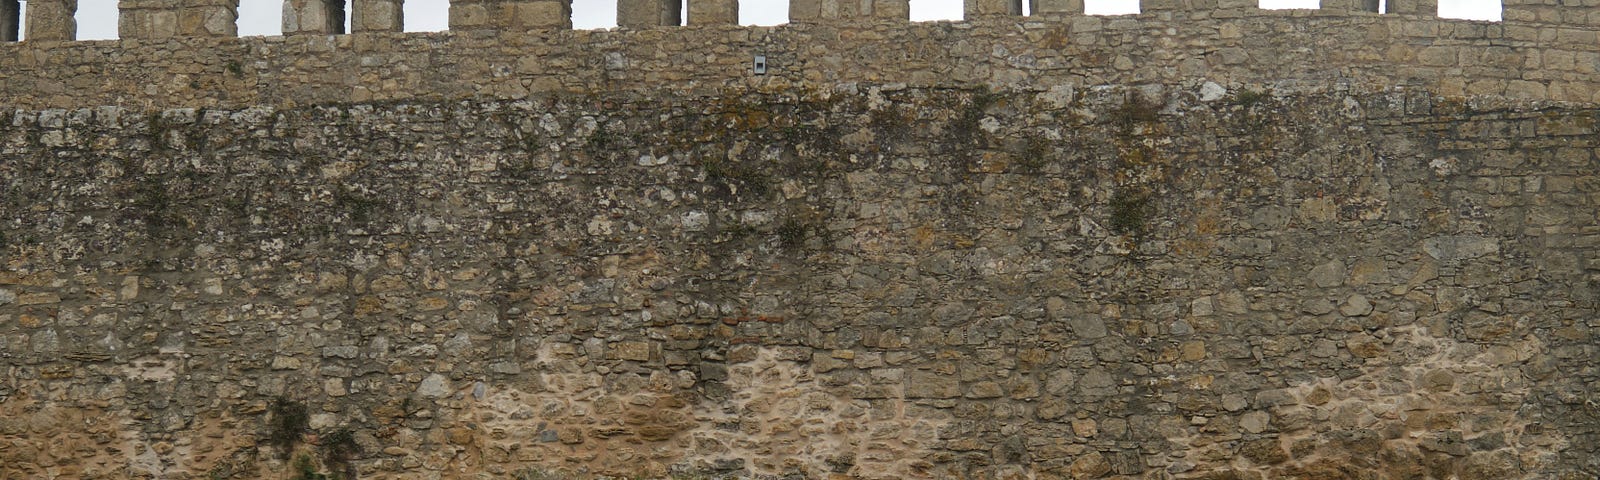 A castle wall